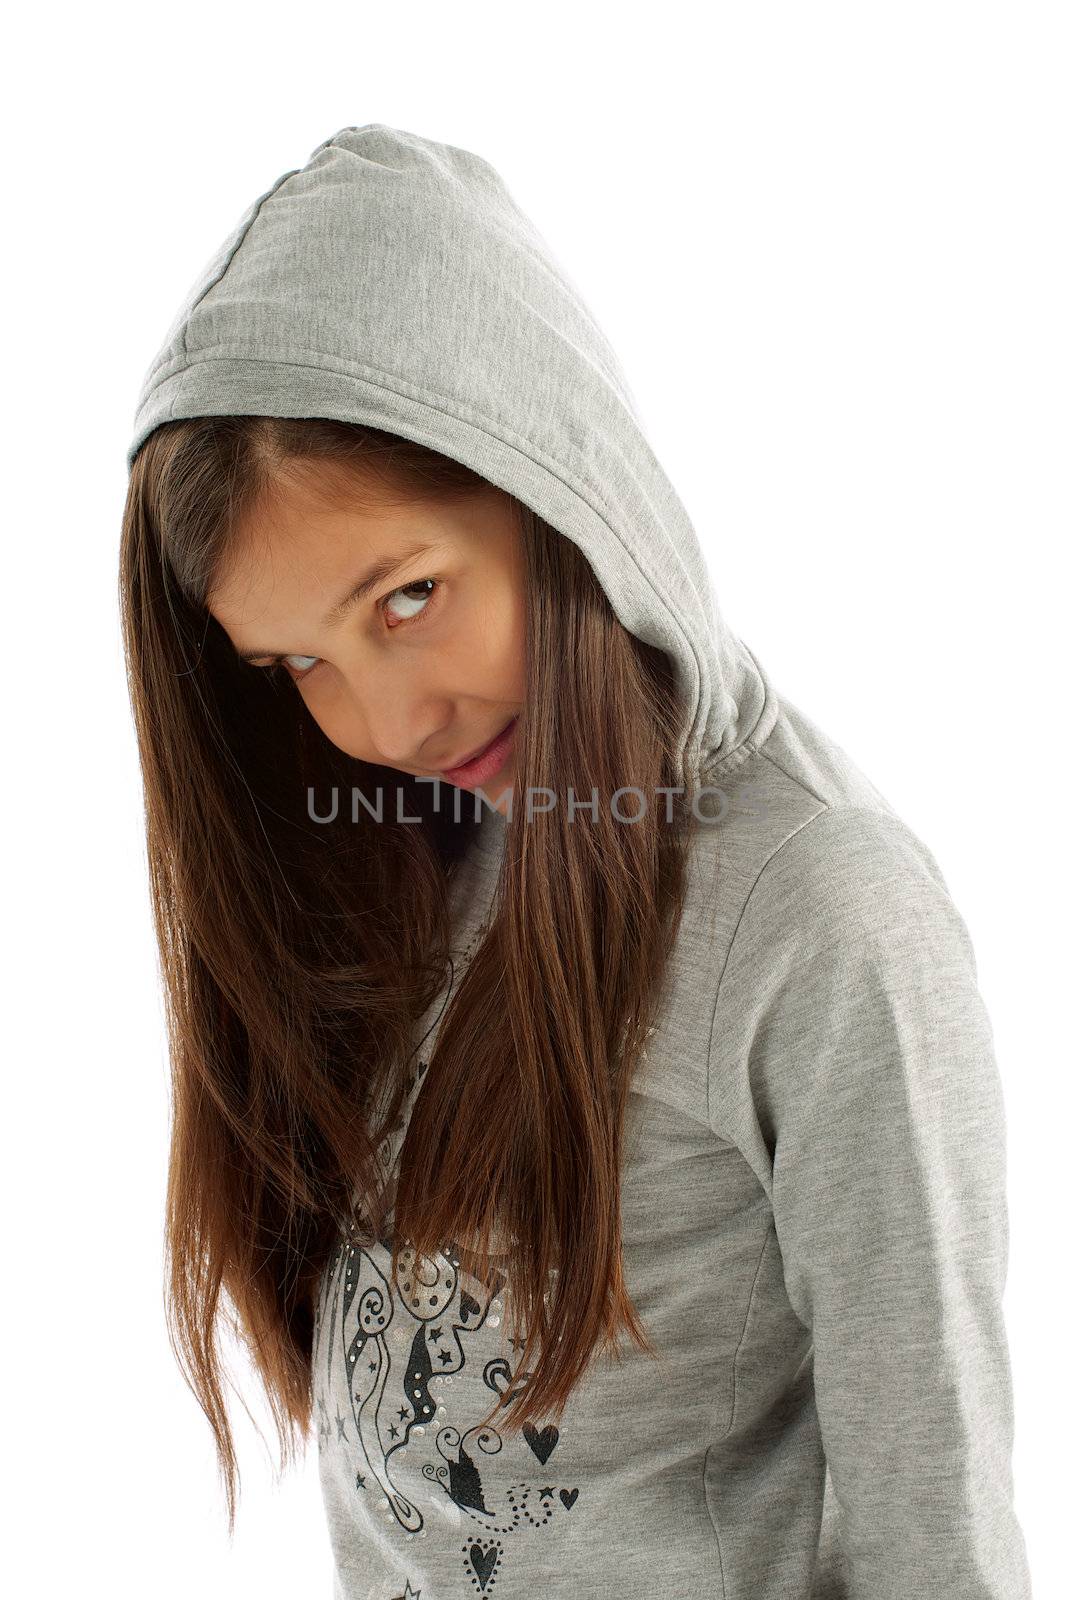 Girl in Hooded Sweatshirt by zhekos